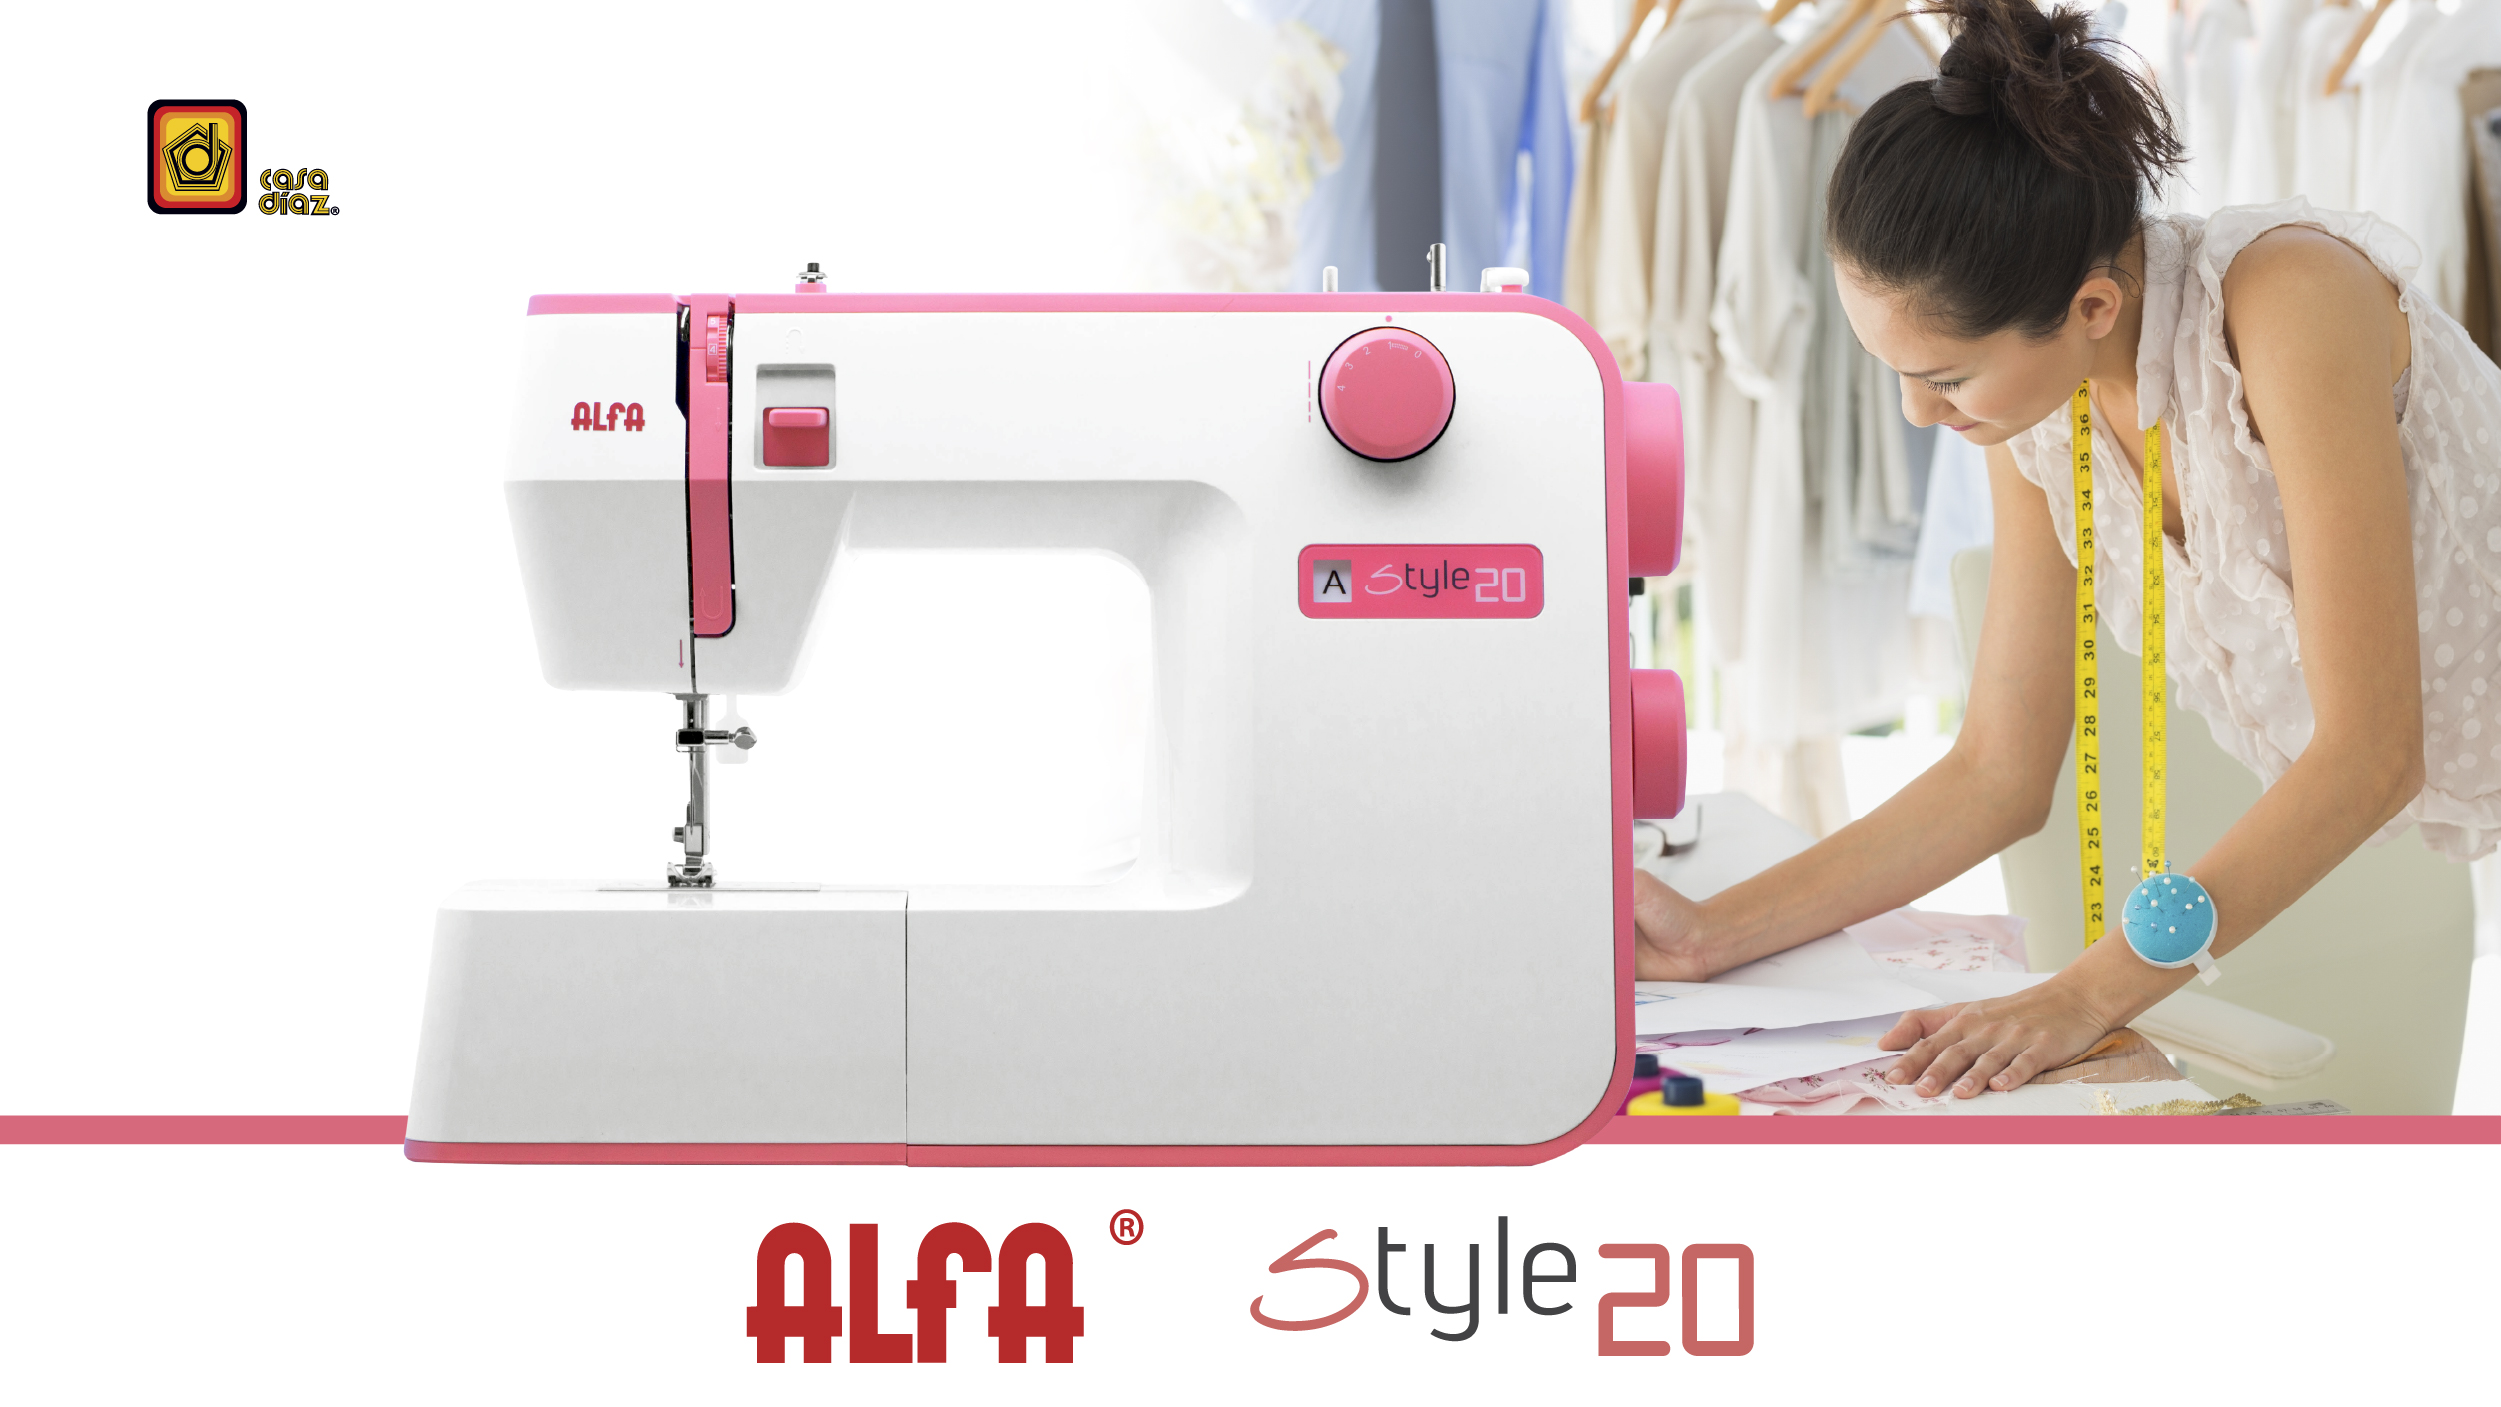 Mejores máquinas de coser Alfa